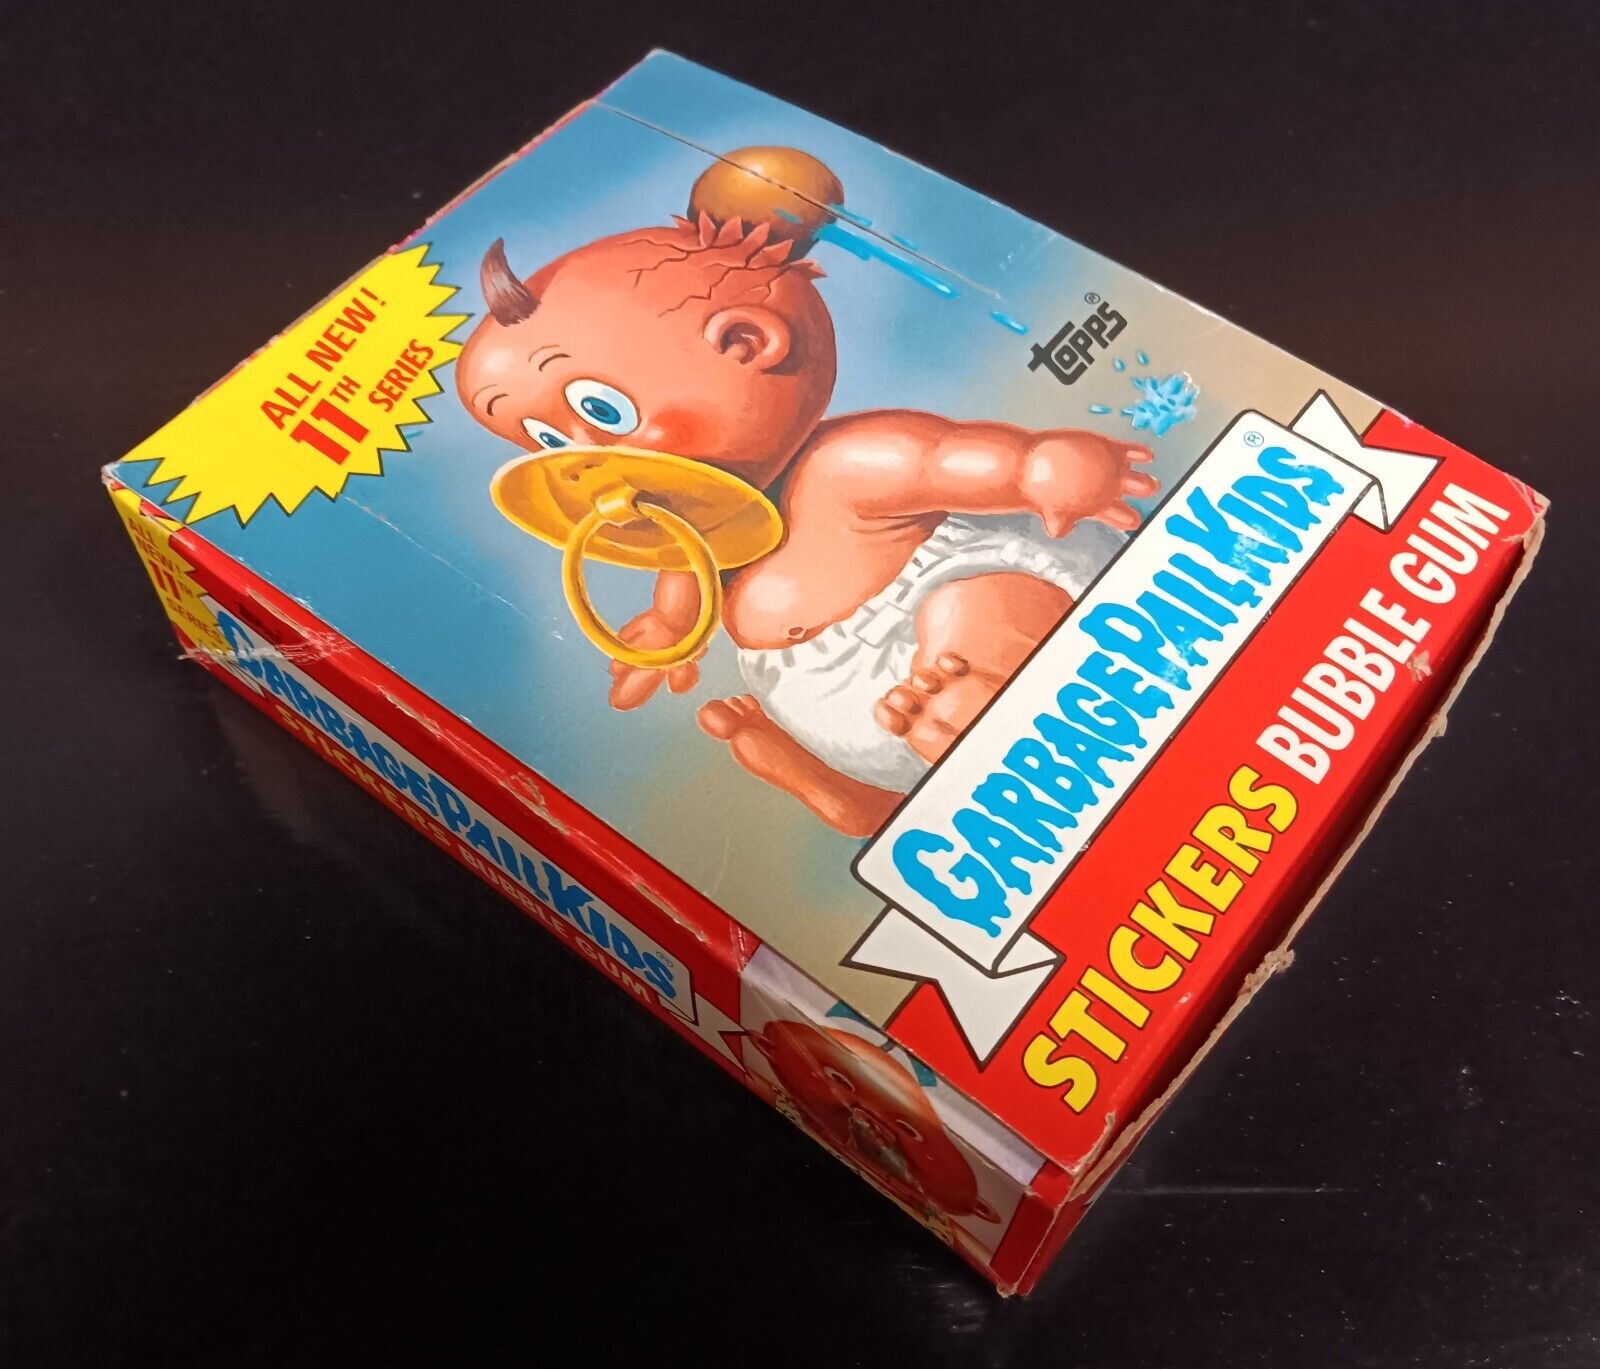 Garbage Pail Kids series 11 box